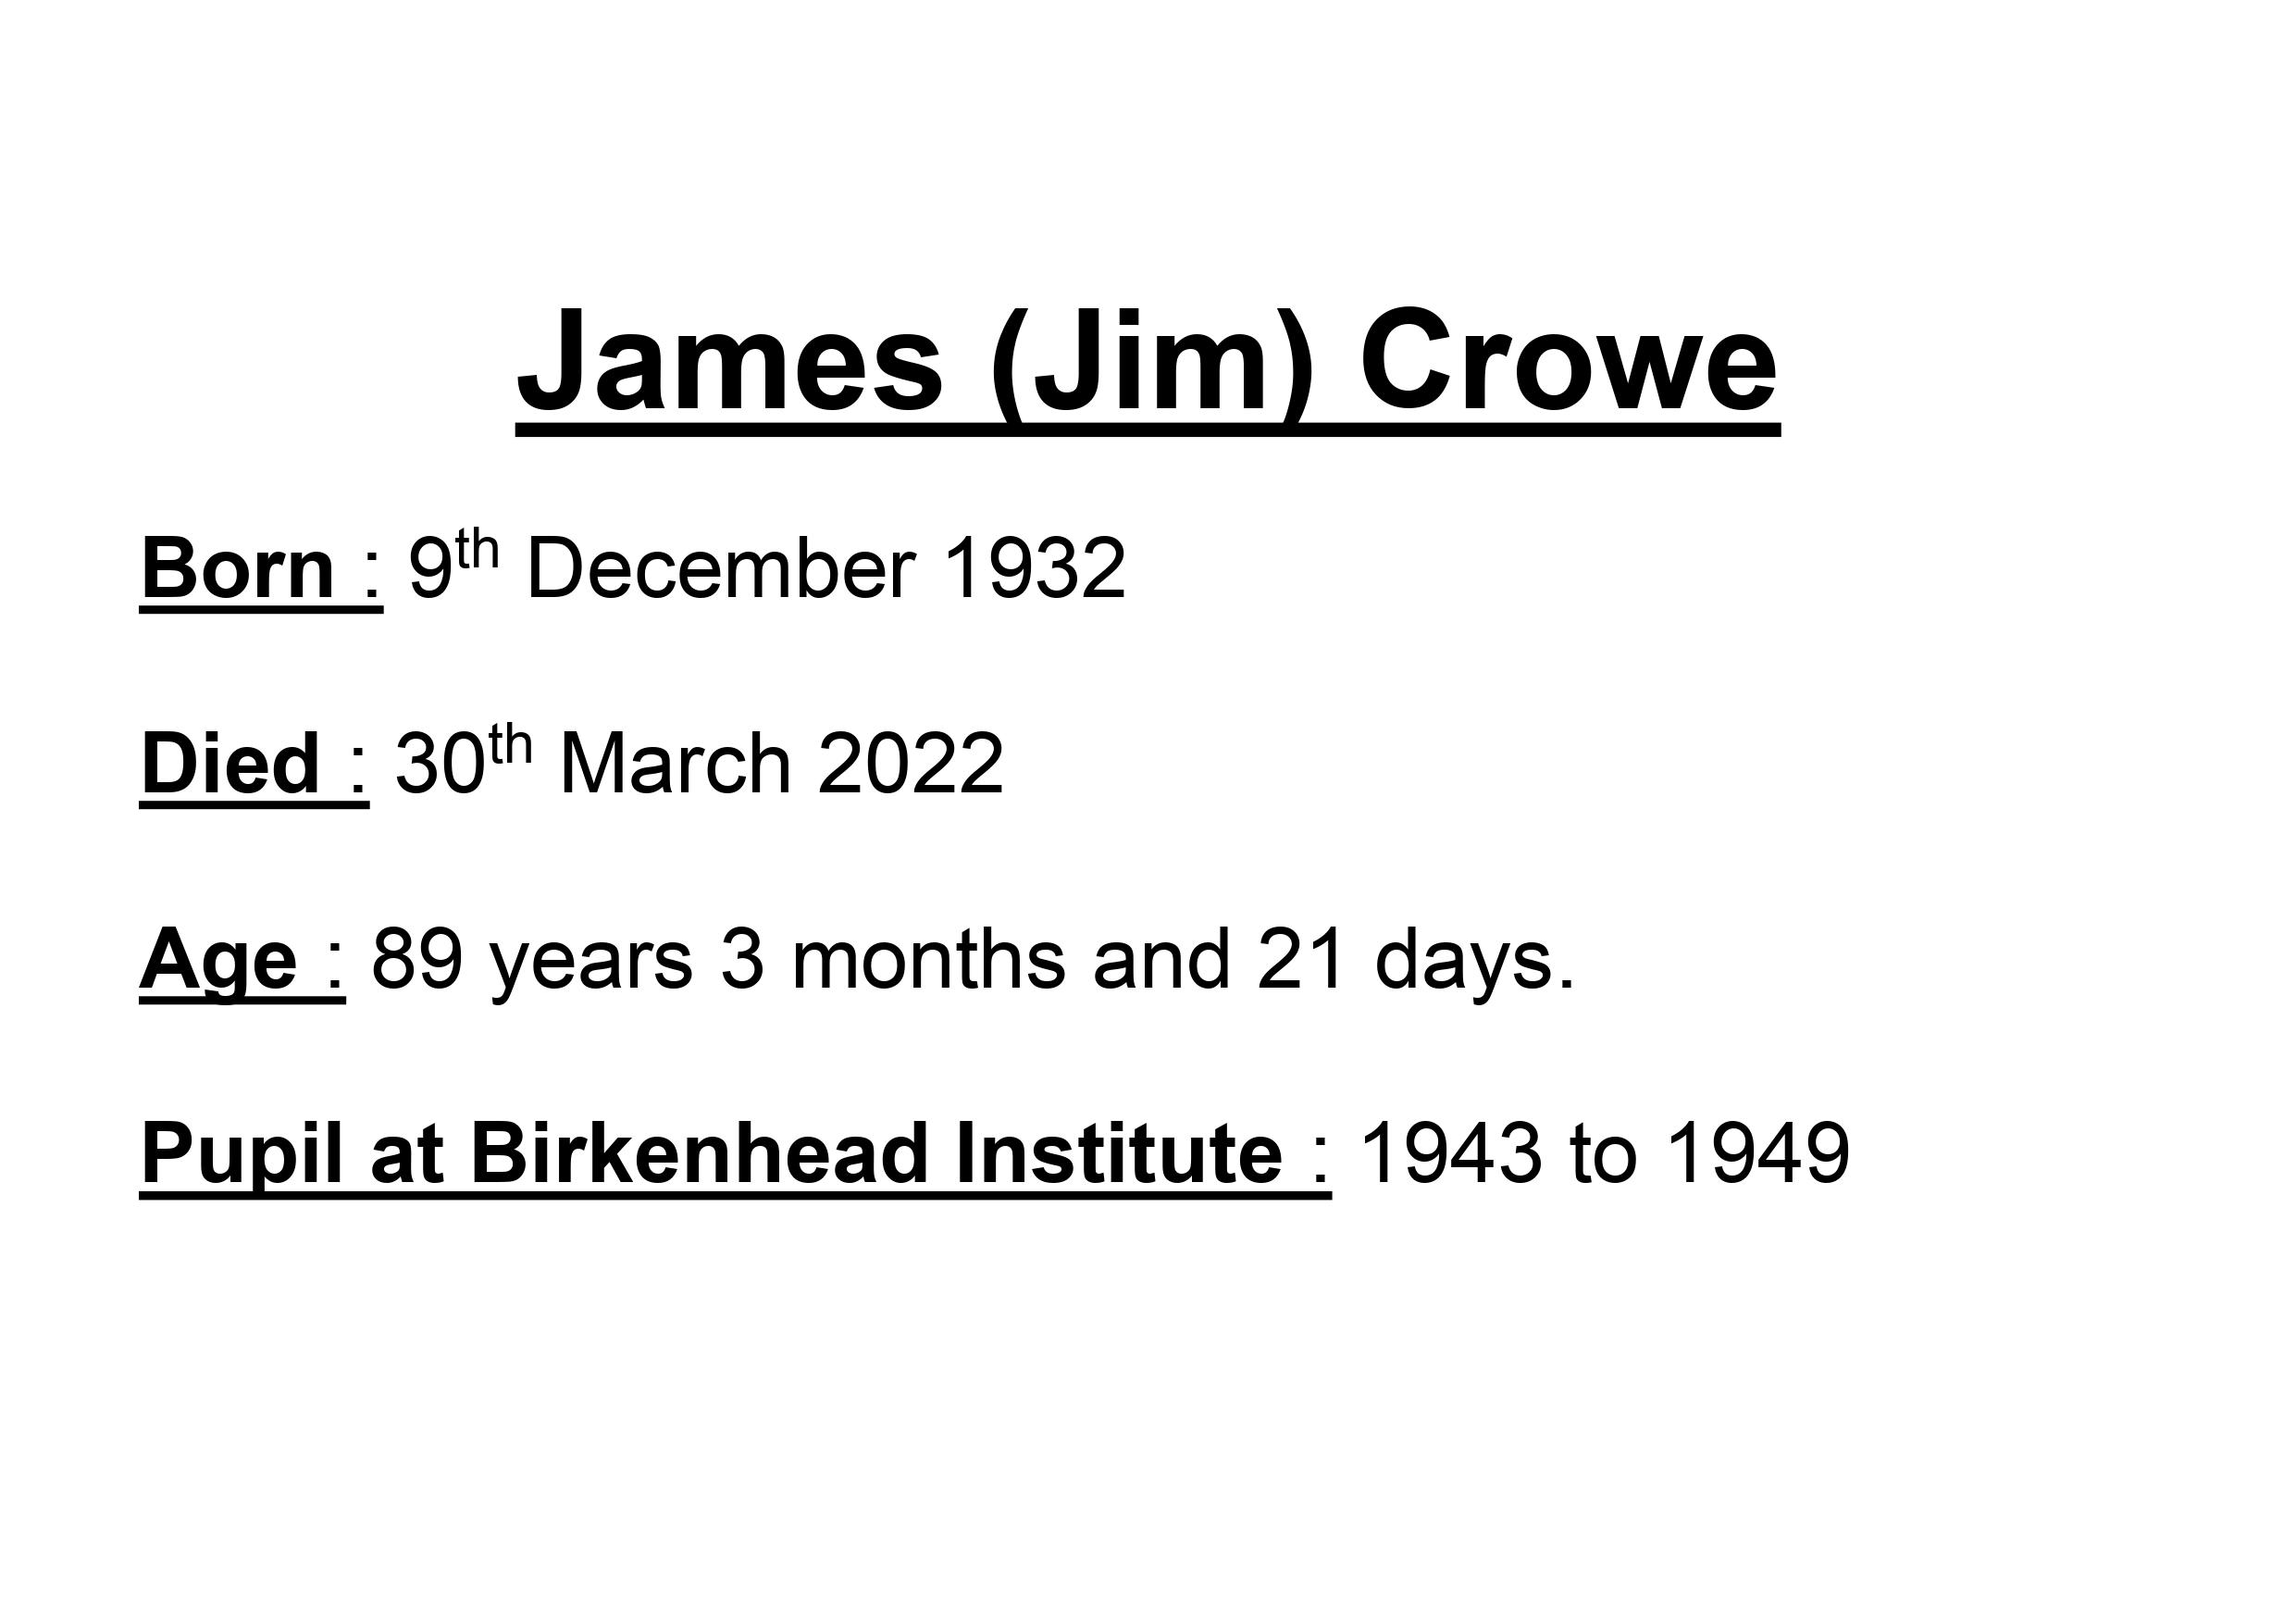 Jim Crowe